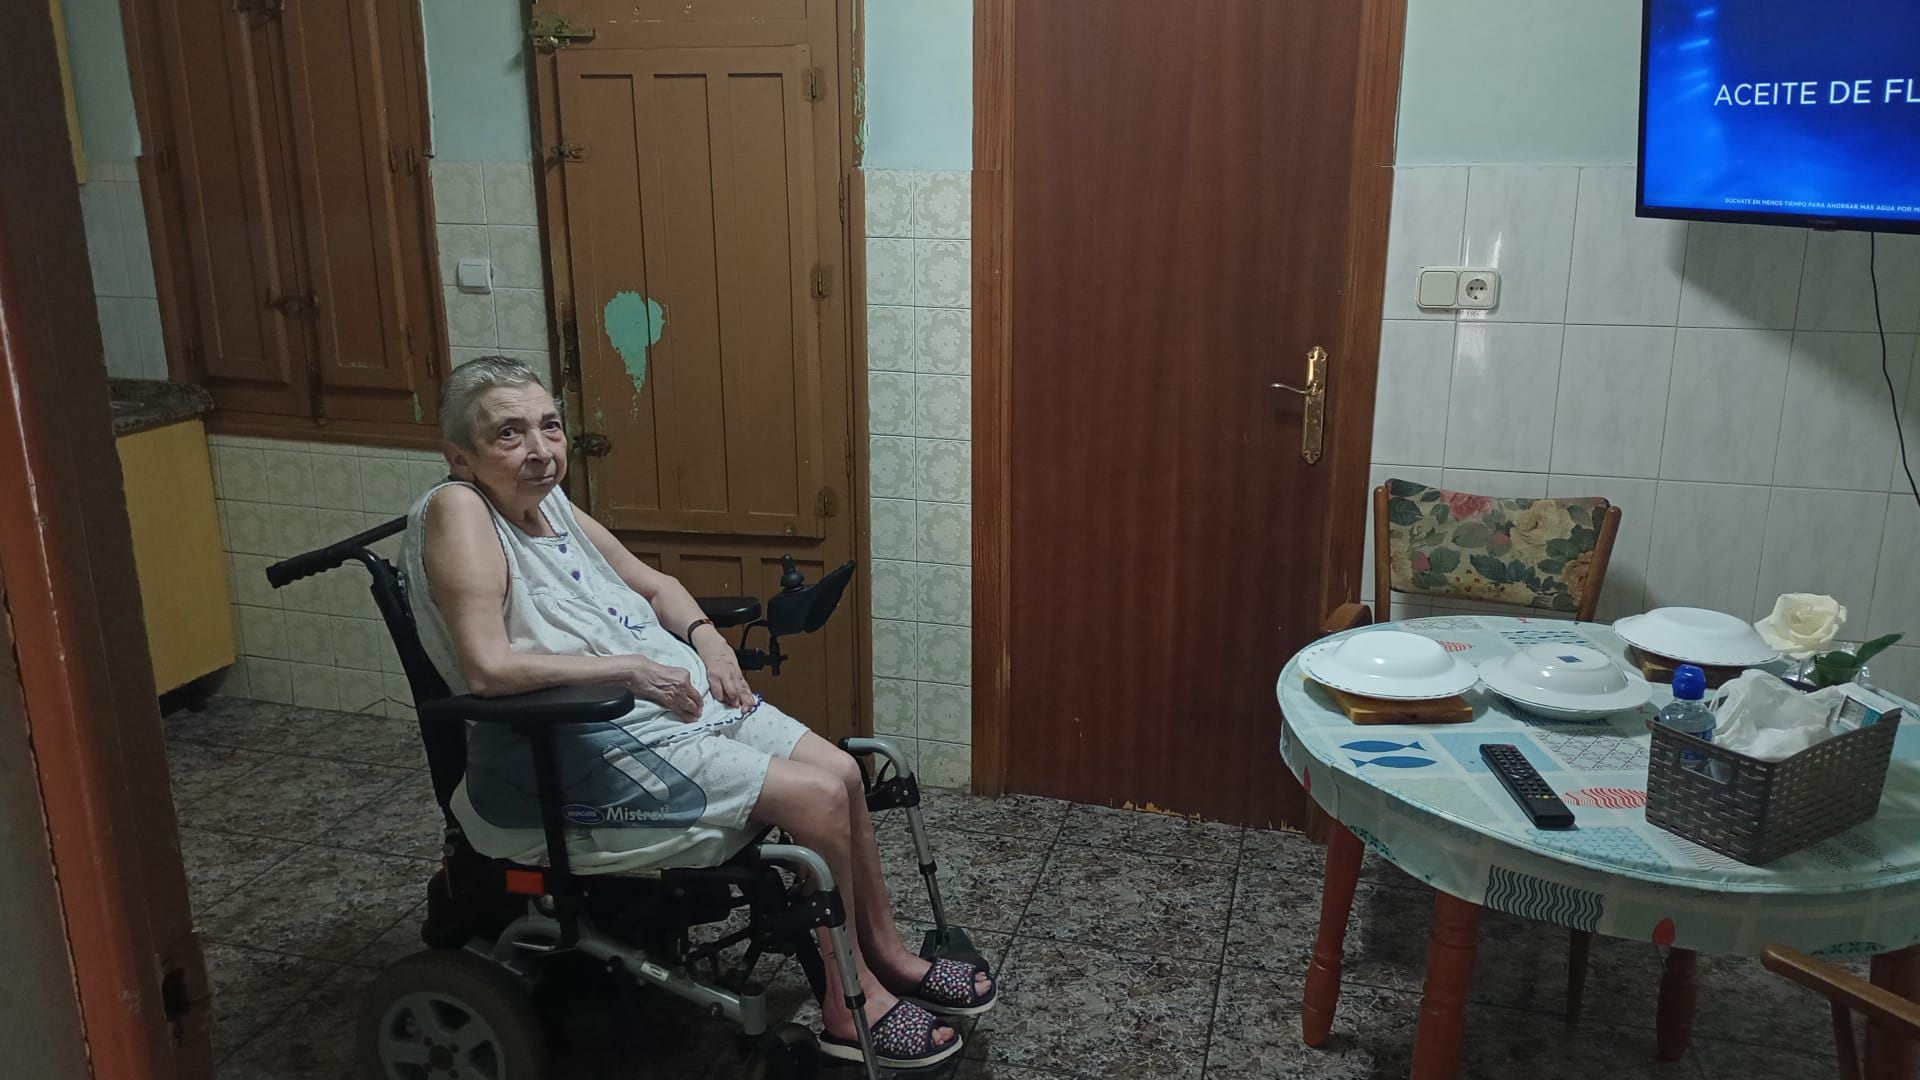 María, la mujer de 79 años a la que pretenden desahuciar. (Imagen cedida por la familia)